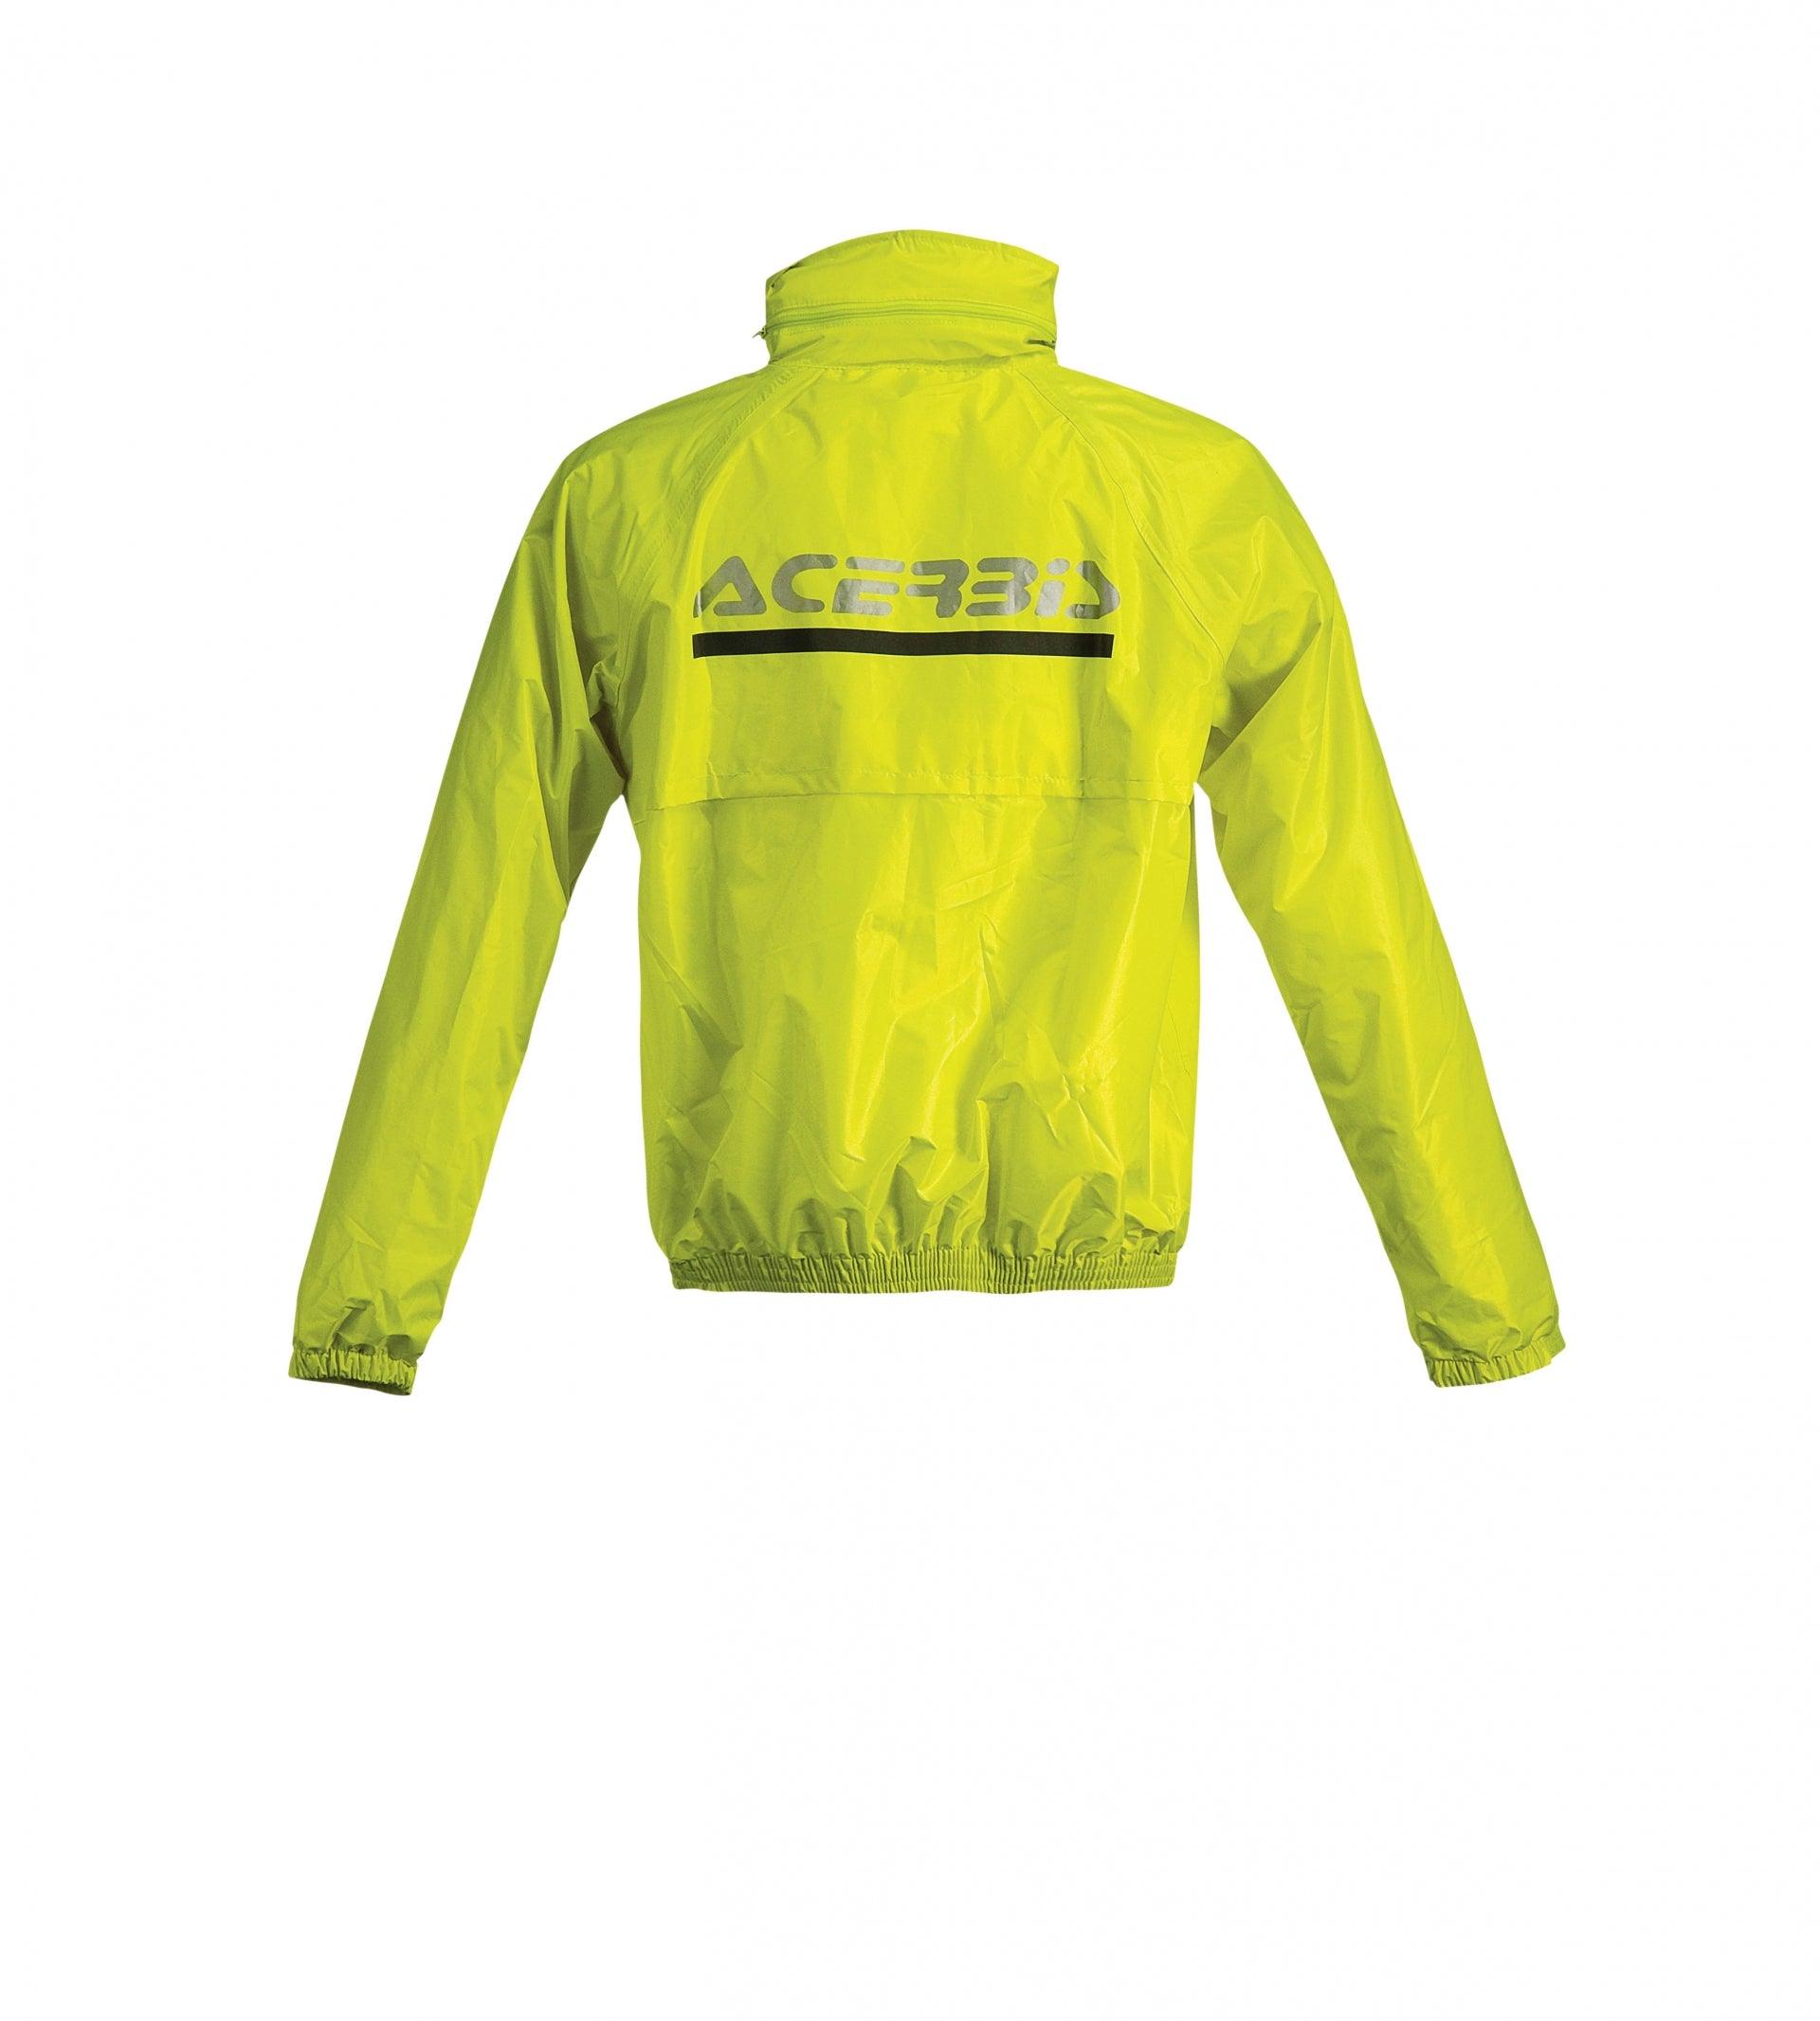 Tuta antipioggia divisibile Acerbis Rain Suit Logo – Moto Adventure